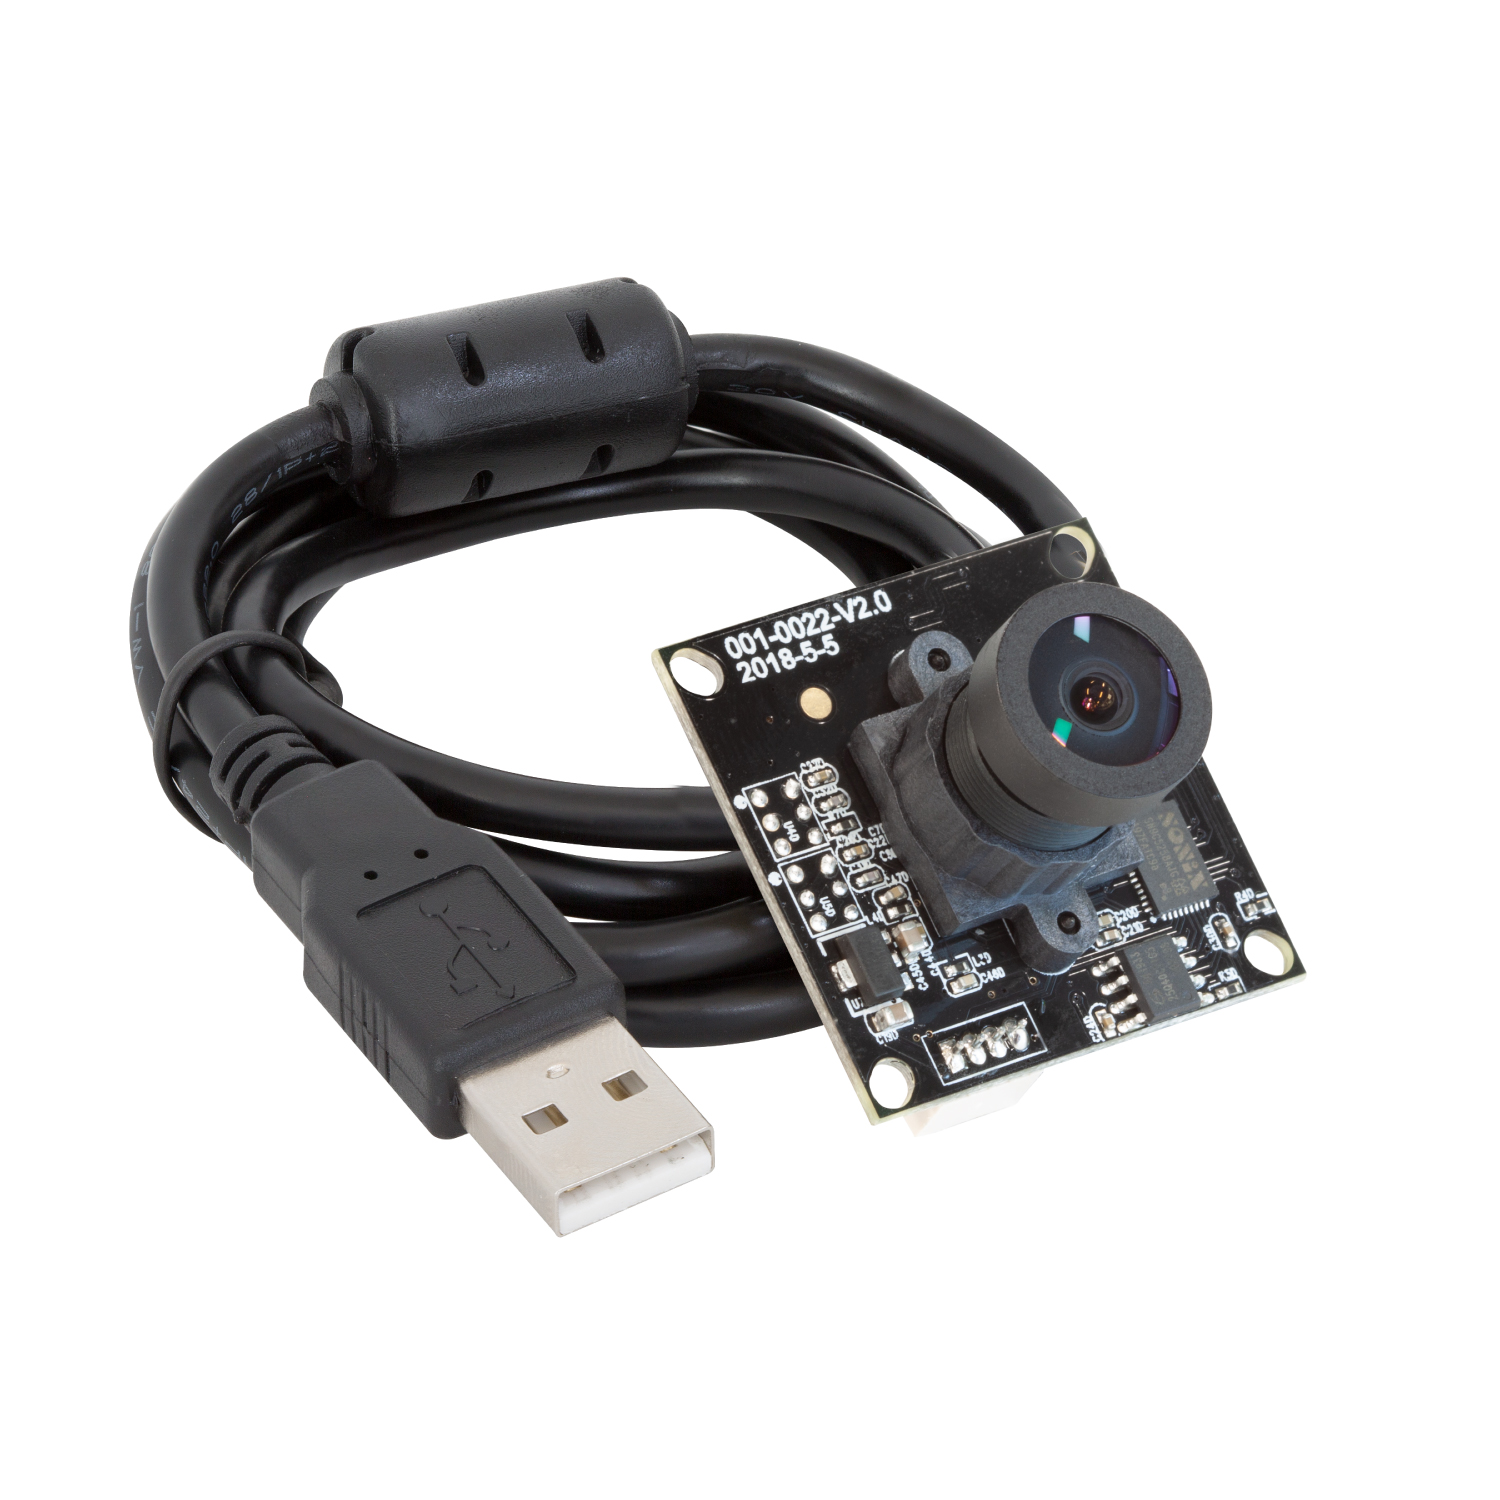 Linux ELP 170 degrés Fisheye Objectif Grand Angle Mini Cmos OV5640 5MP Autofocus USB Module de Caméra pour Android Windows